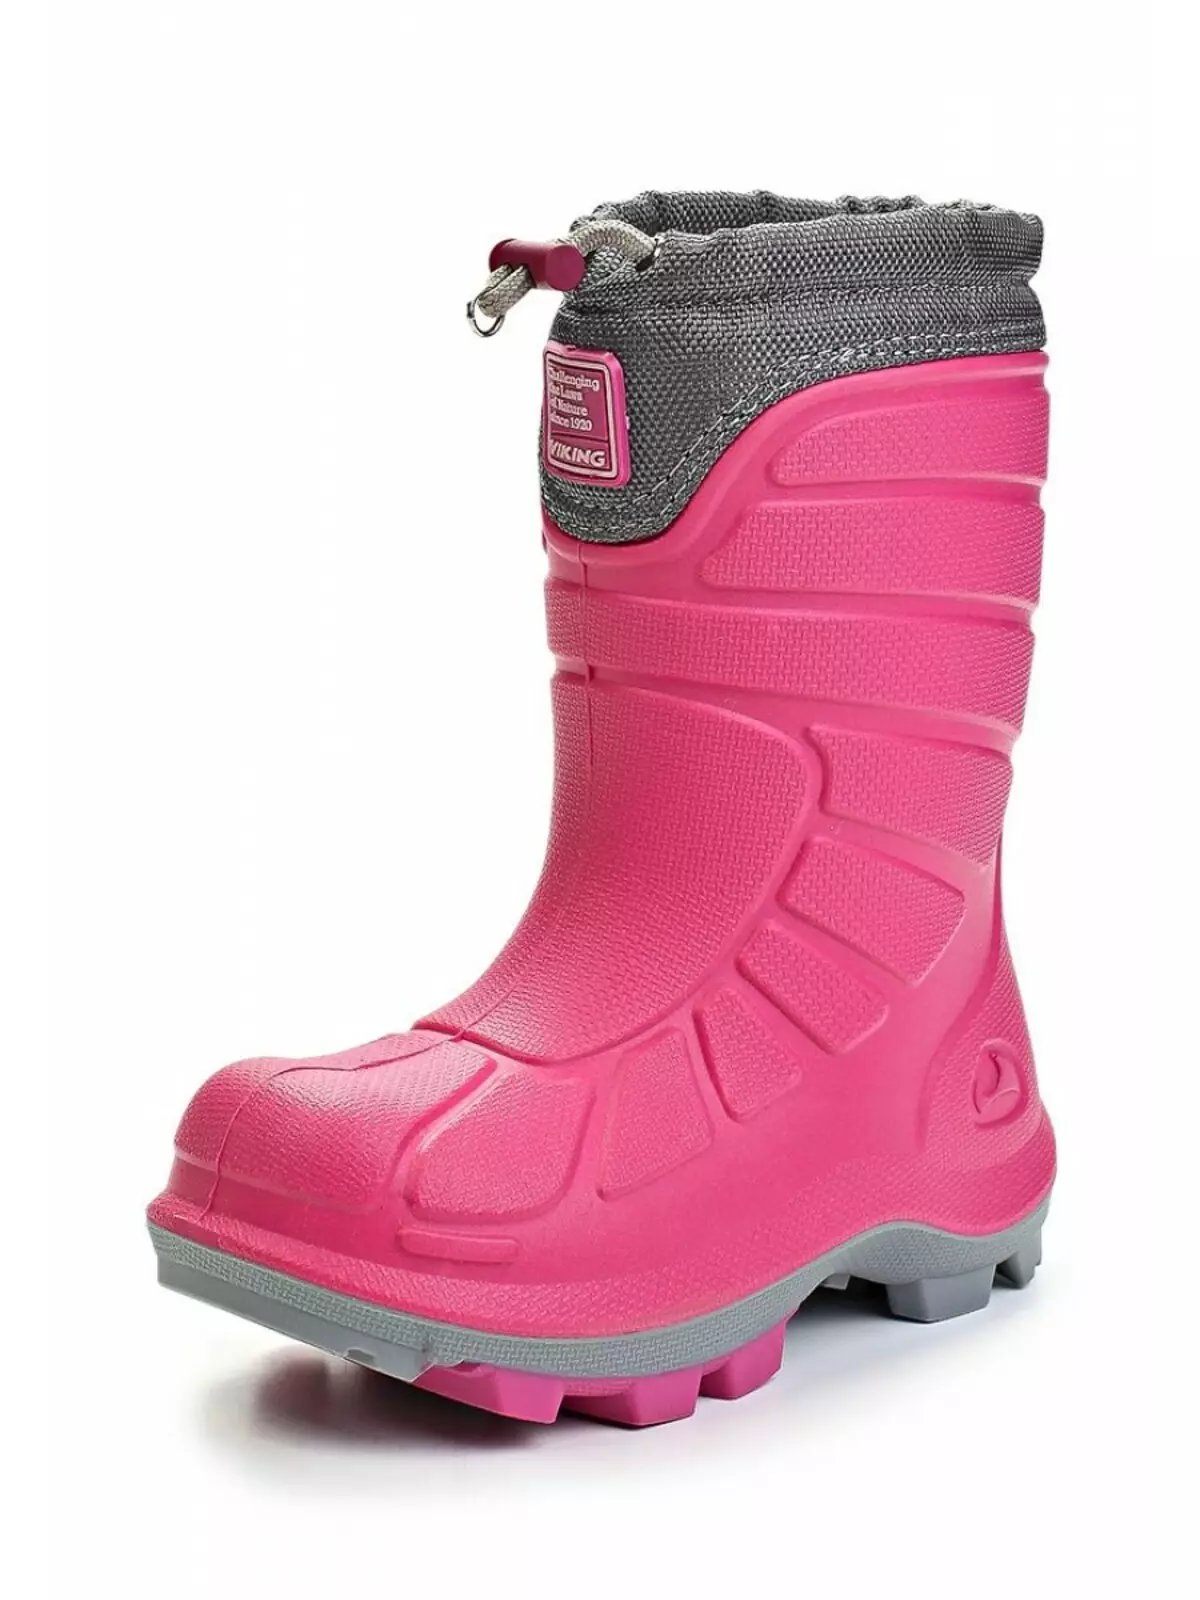 Wikigi Boots (73 사진) : 겨울 어린이 및 여성 폴리 우레탄 모델, 차원 메쉬 및 바이킹 리뷰 2258_8